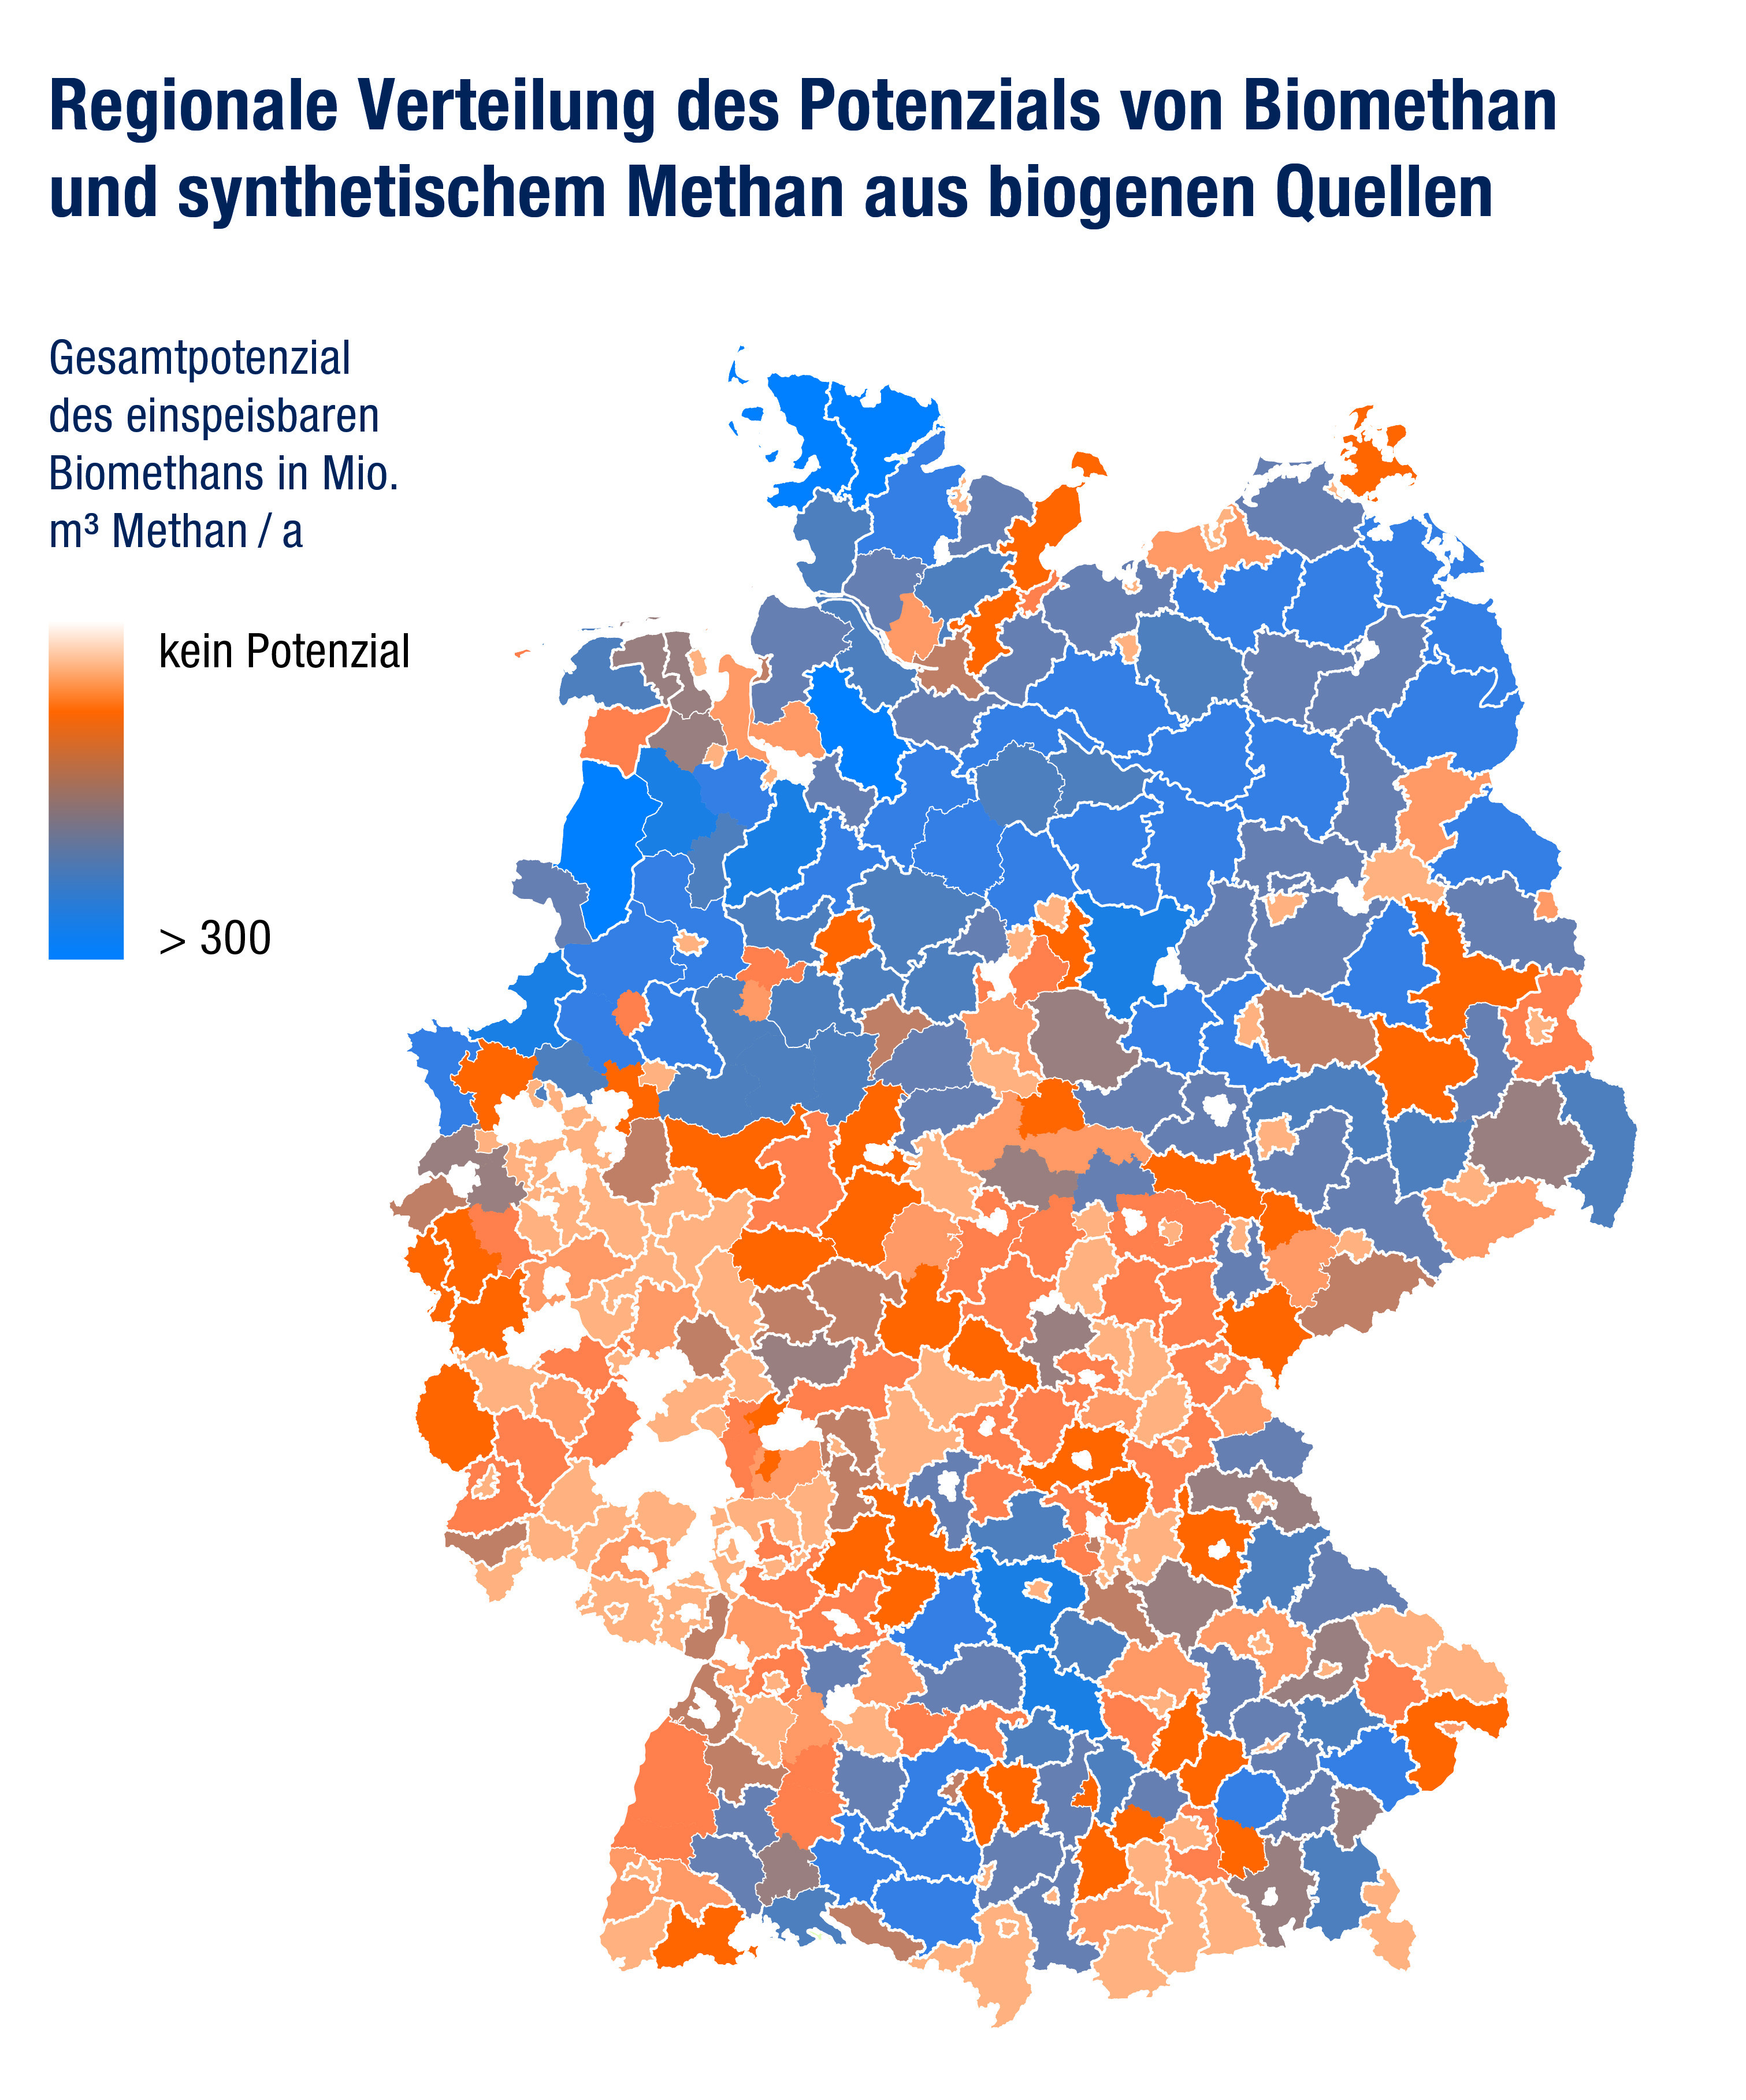 Vor allem im Norgen und vereinzelt im Süden Deutschlands gibt es großes Potenzial, in der Mitte Deutschlands dagegen kaum